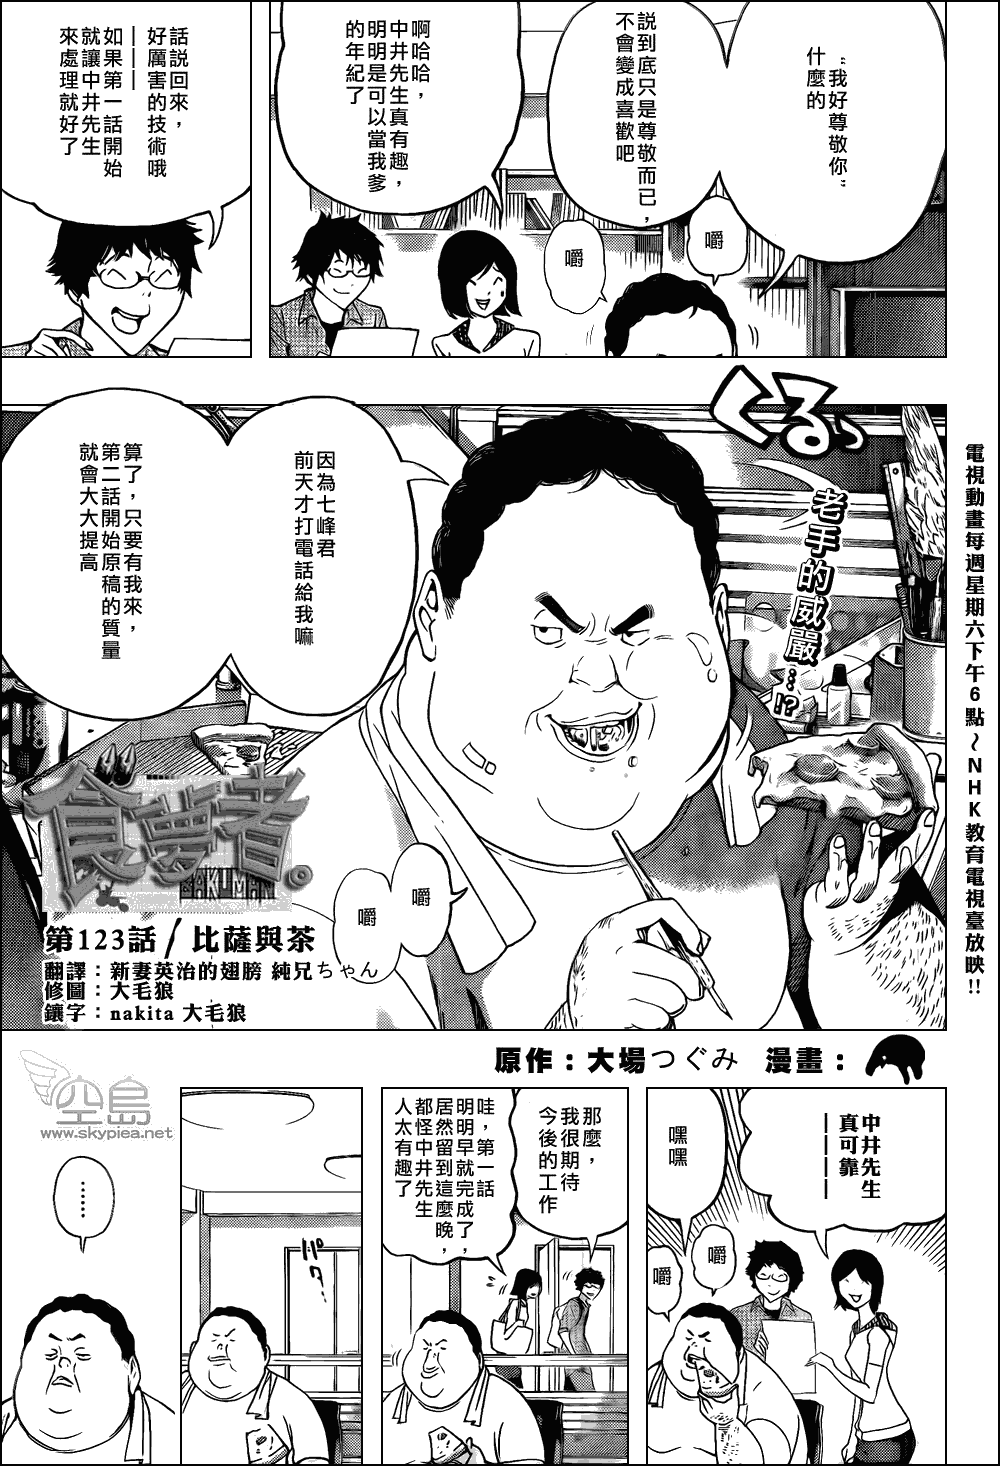 《食梦者》漫画 bakuman123集